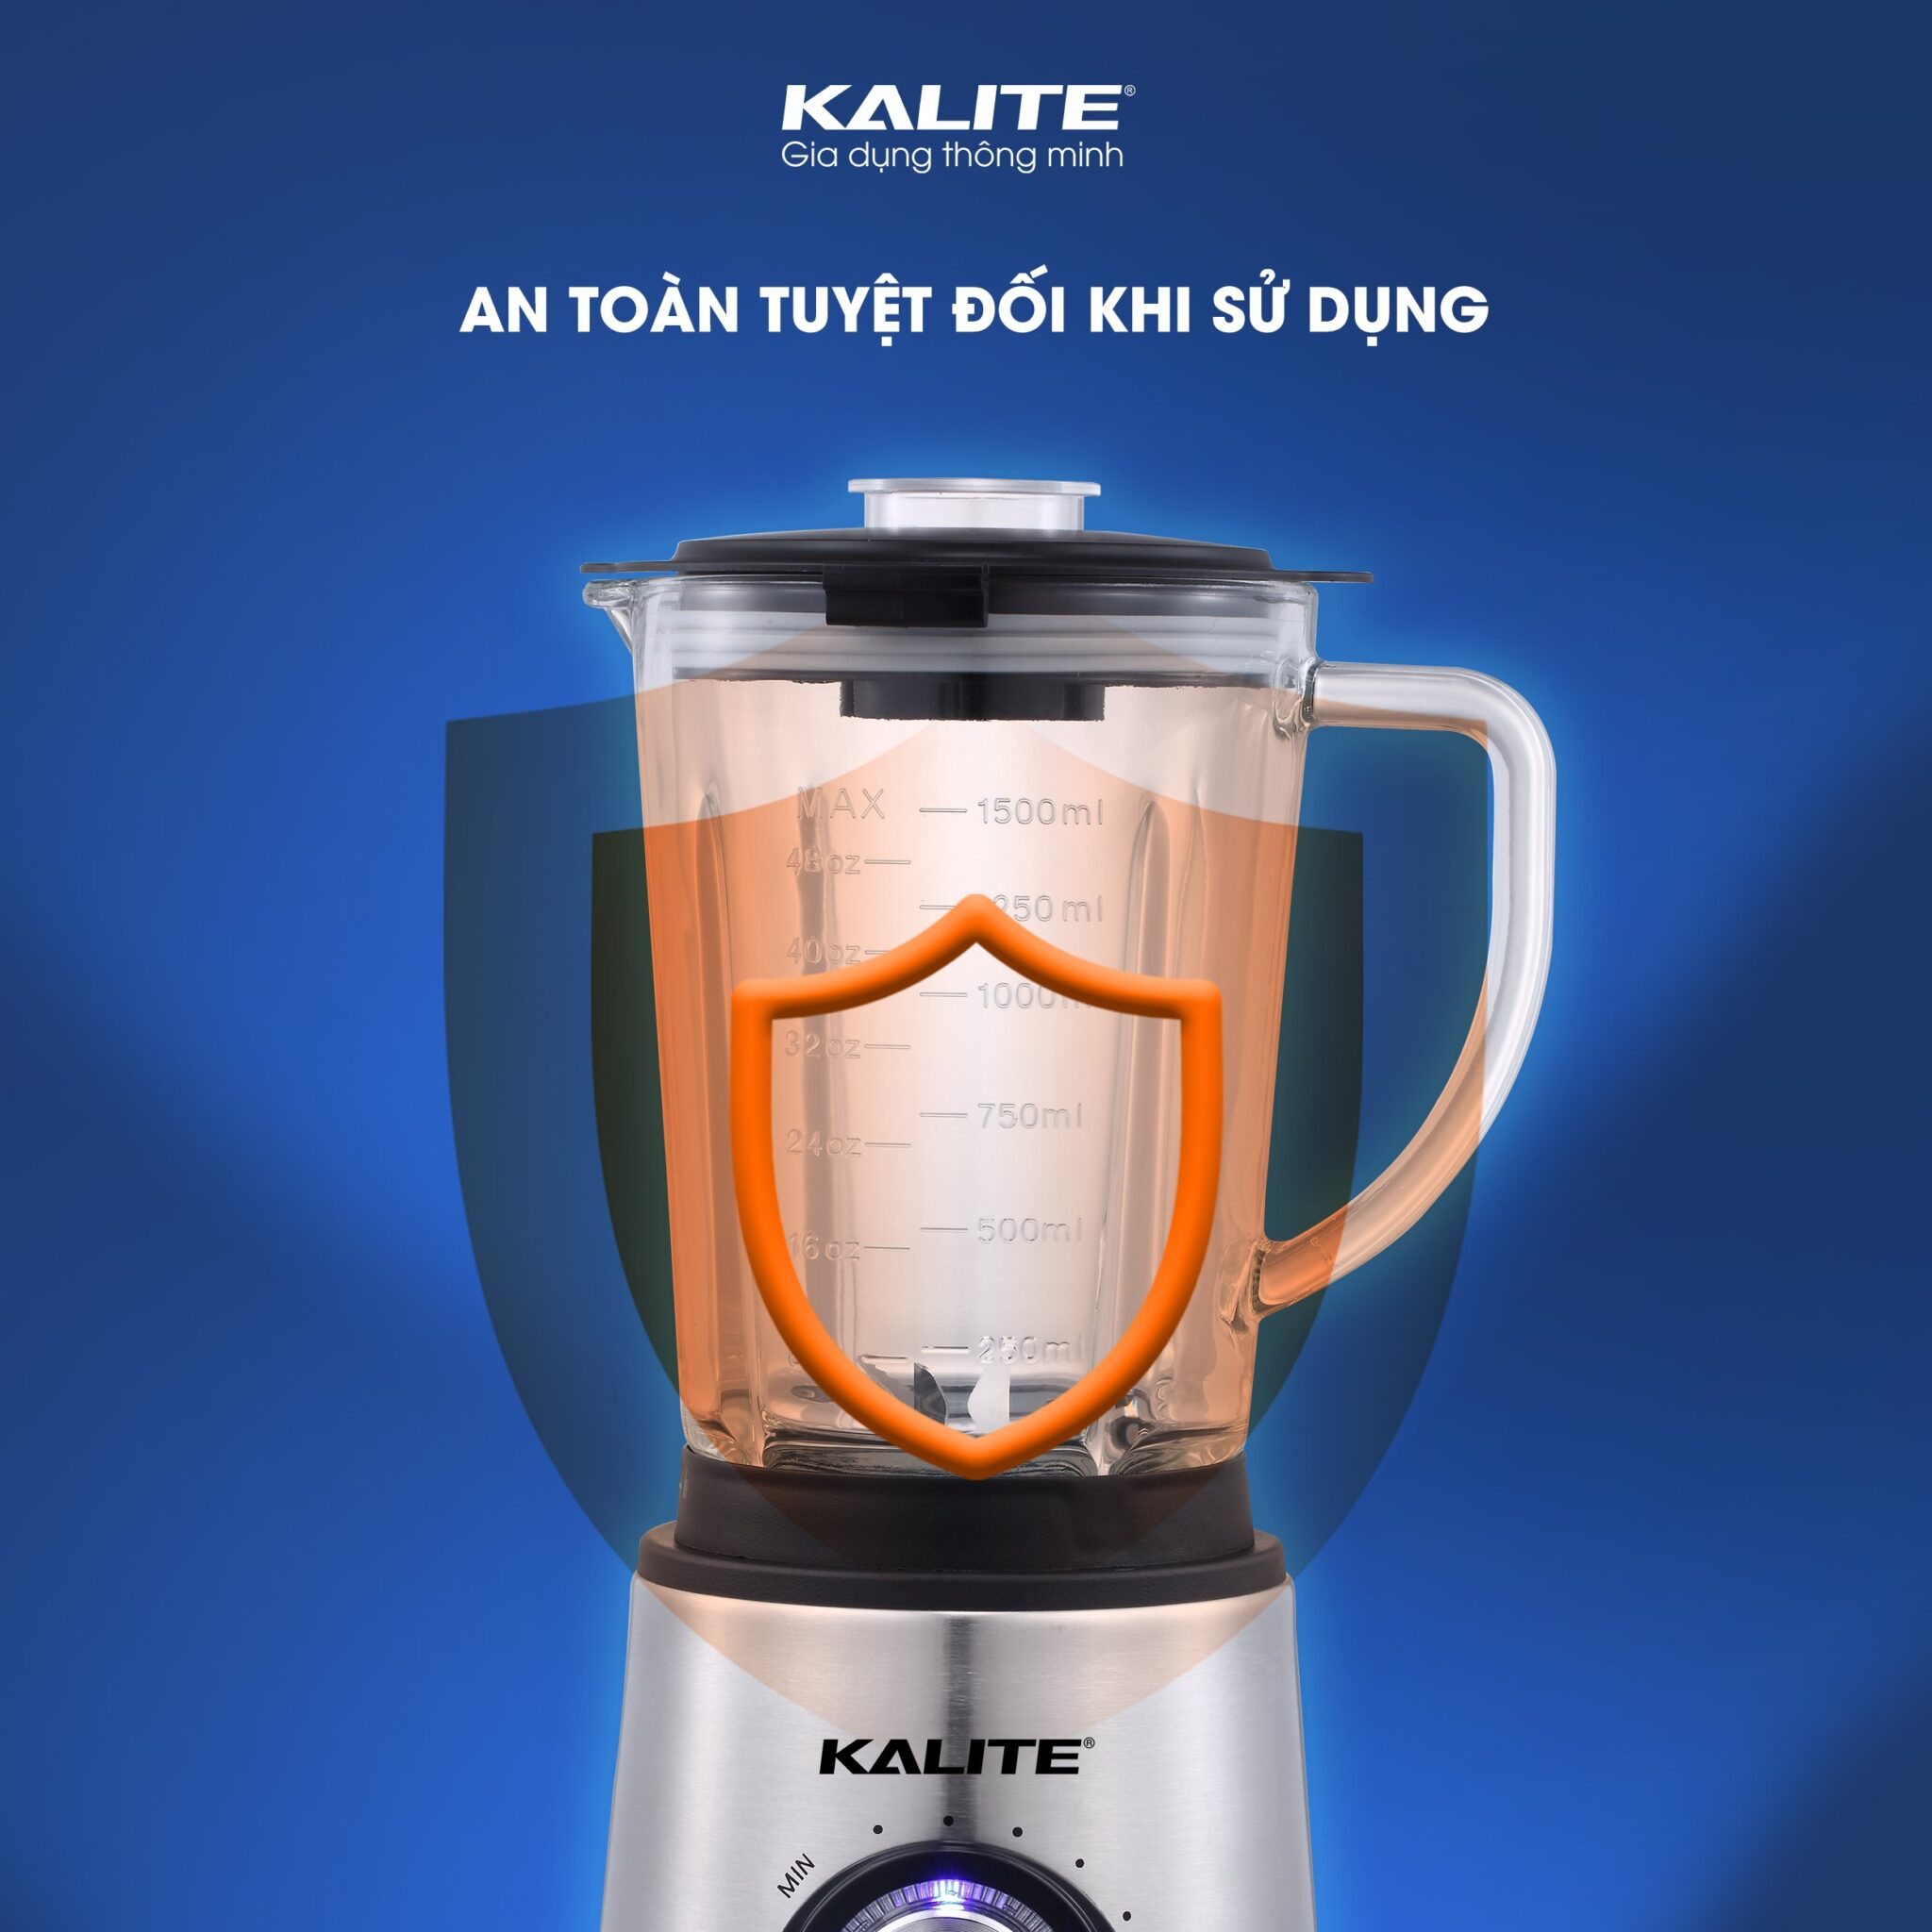 Máy xay sinh tố Kalite KEB 4171 công suất xay 1000W lưỡi dao thép không gỉ, 2 cối xay tiện dụng được làm bằng thủy tinh và inox 304, hàng chính hãng